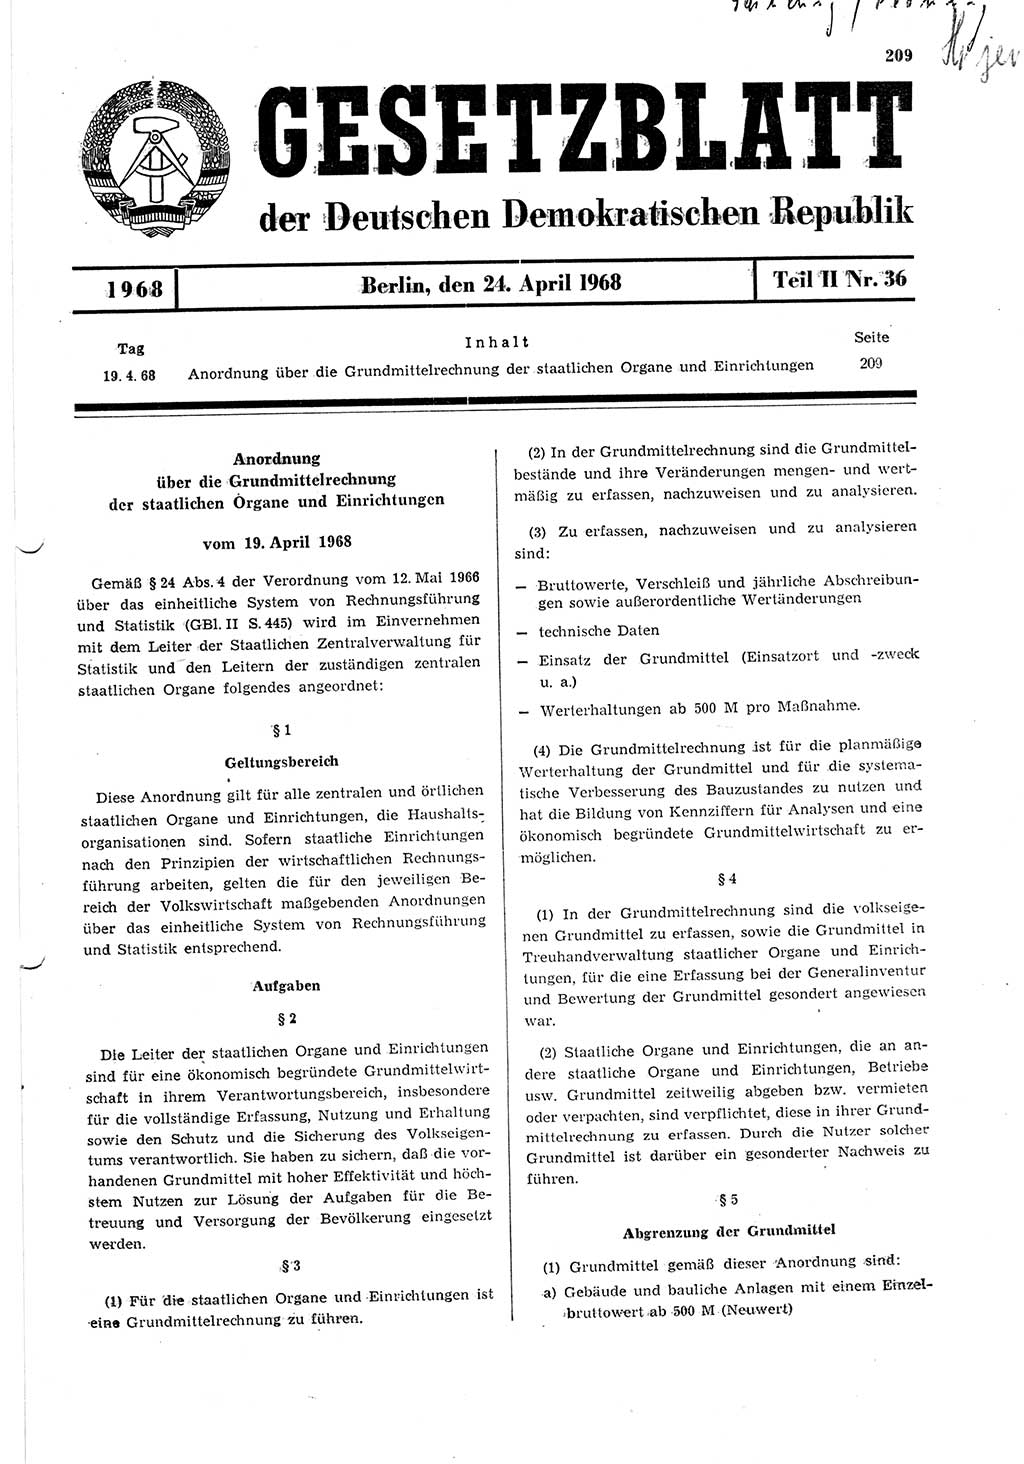 Gesetzblatt (GBl.) der Deutschen Demokratischen Republik (DDR) Teil ⅠⅠ 1968, Seite 209 (GBl. DDR ⅠⅠ 1968, S. 209)